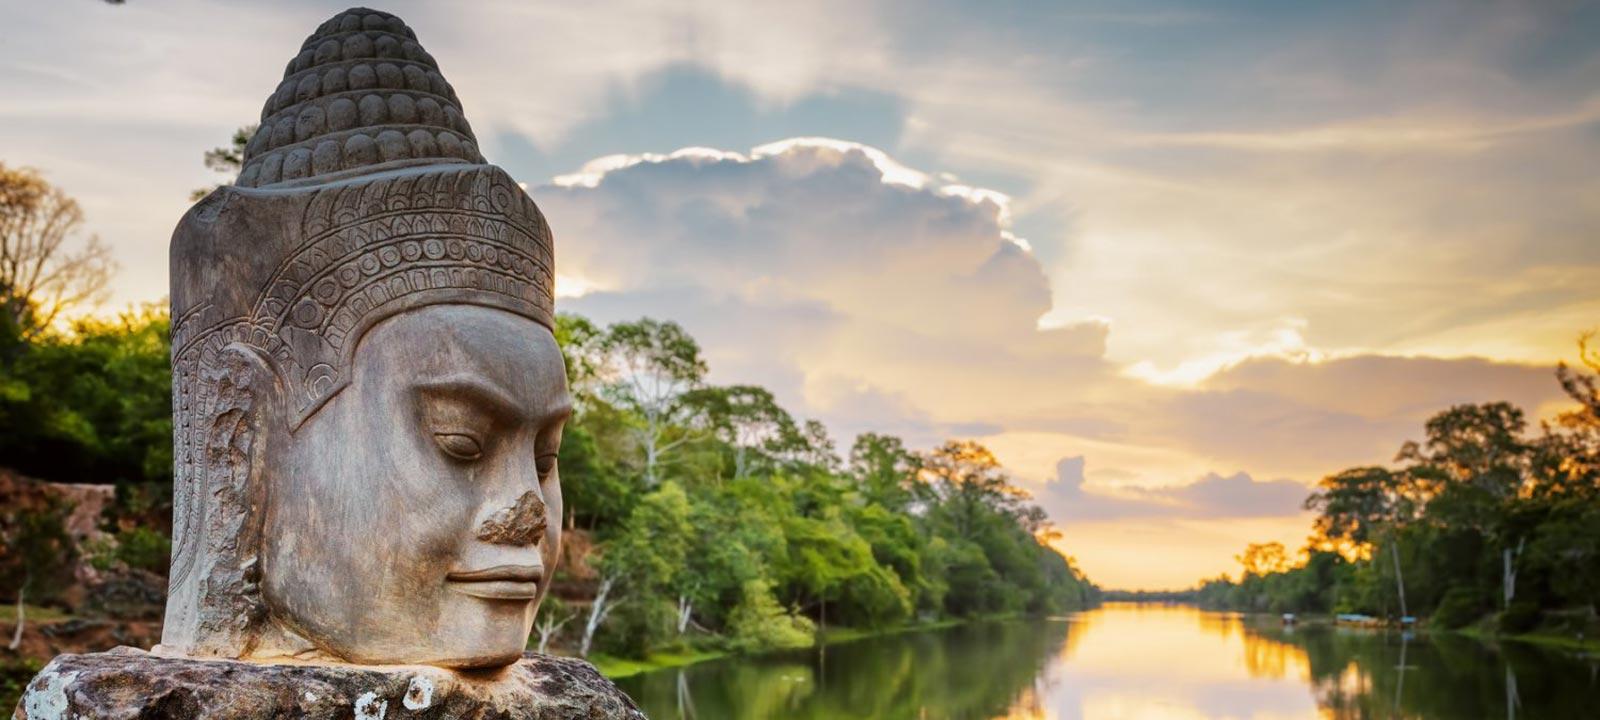 Voyage Siem Reap, le guide voyage Siem Reap complet 2018